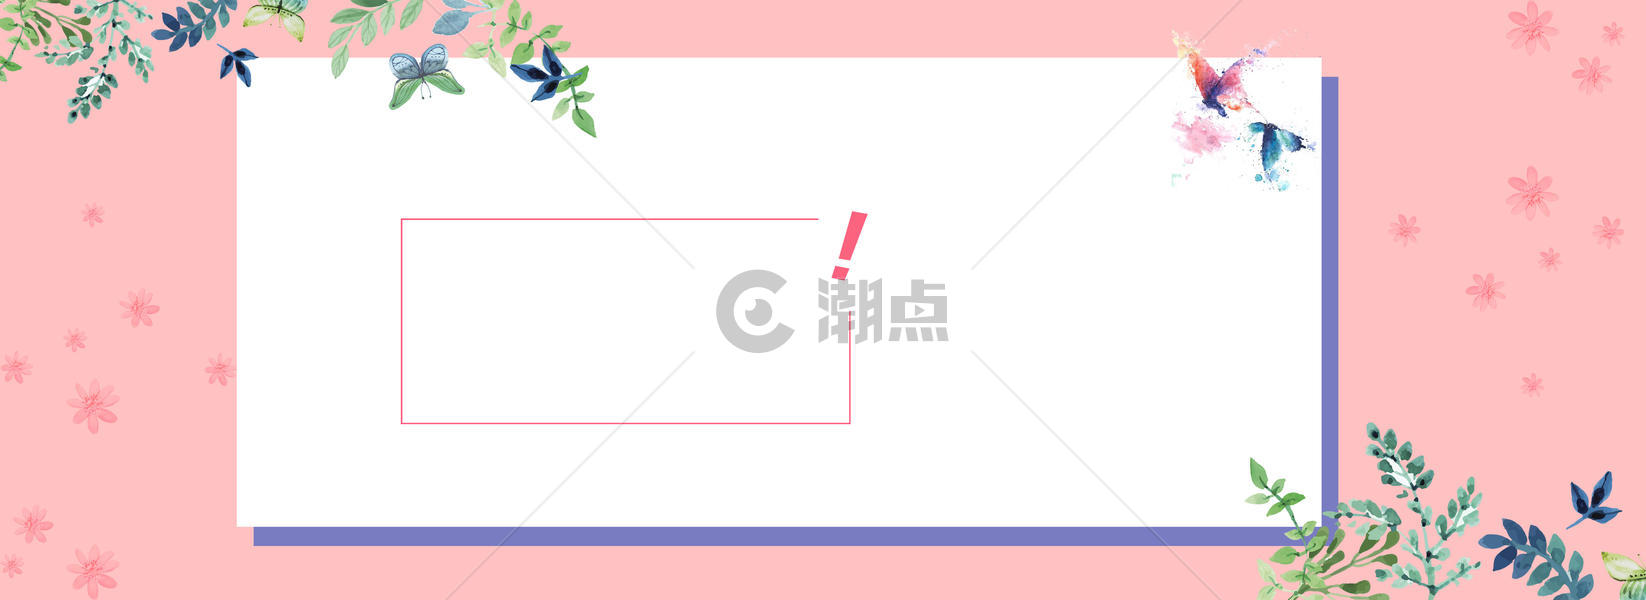 粉色春夏新风尚海报banner背景图片素材免费下载